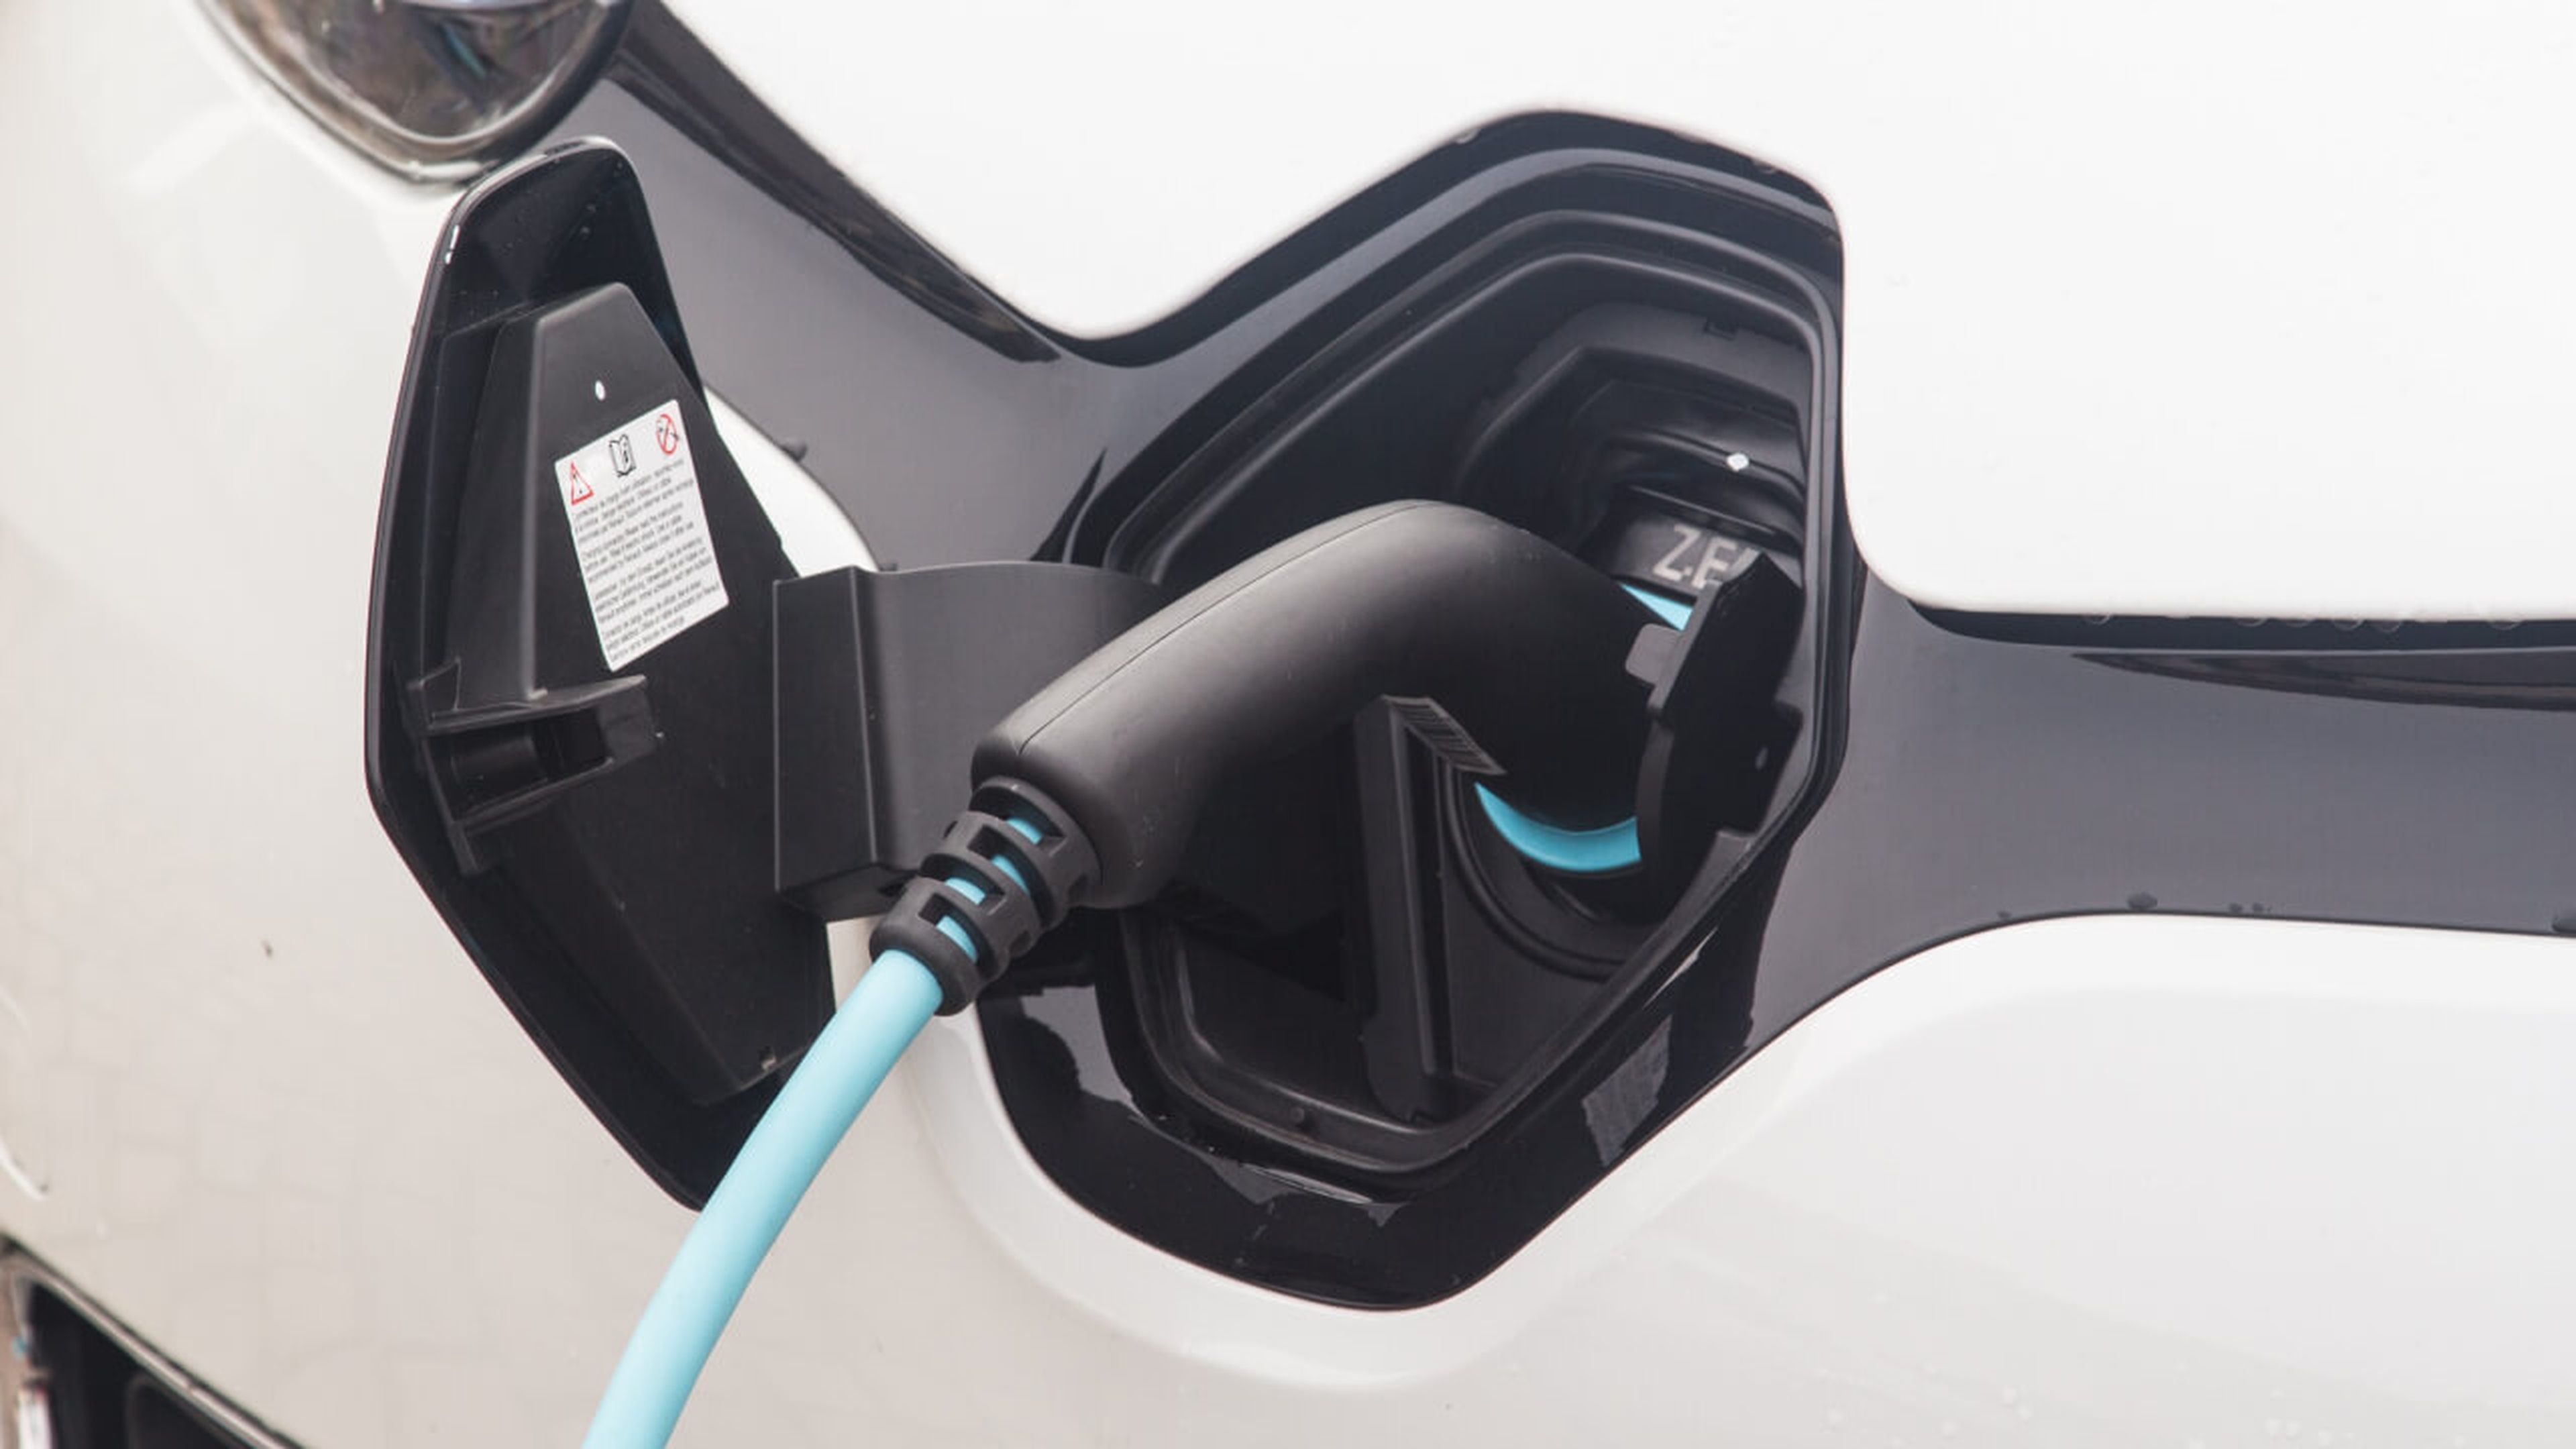 Francia ya ha regulado la conversión de los coches usados en eléctricos